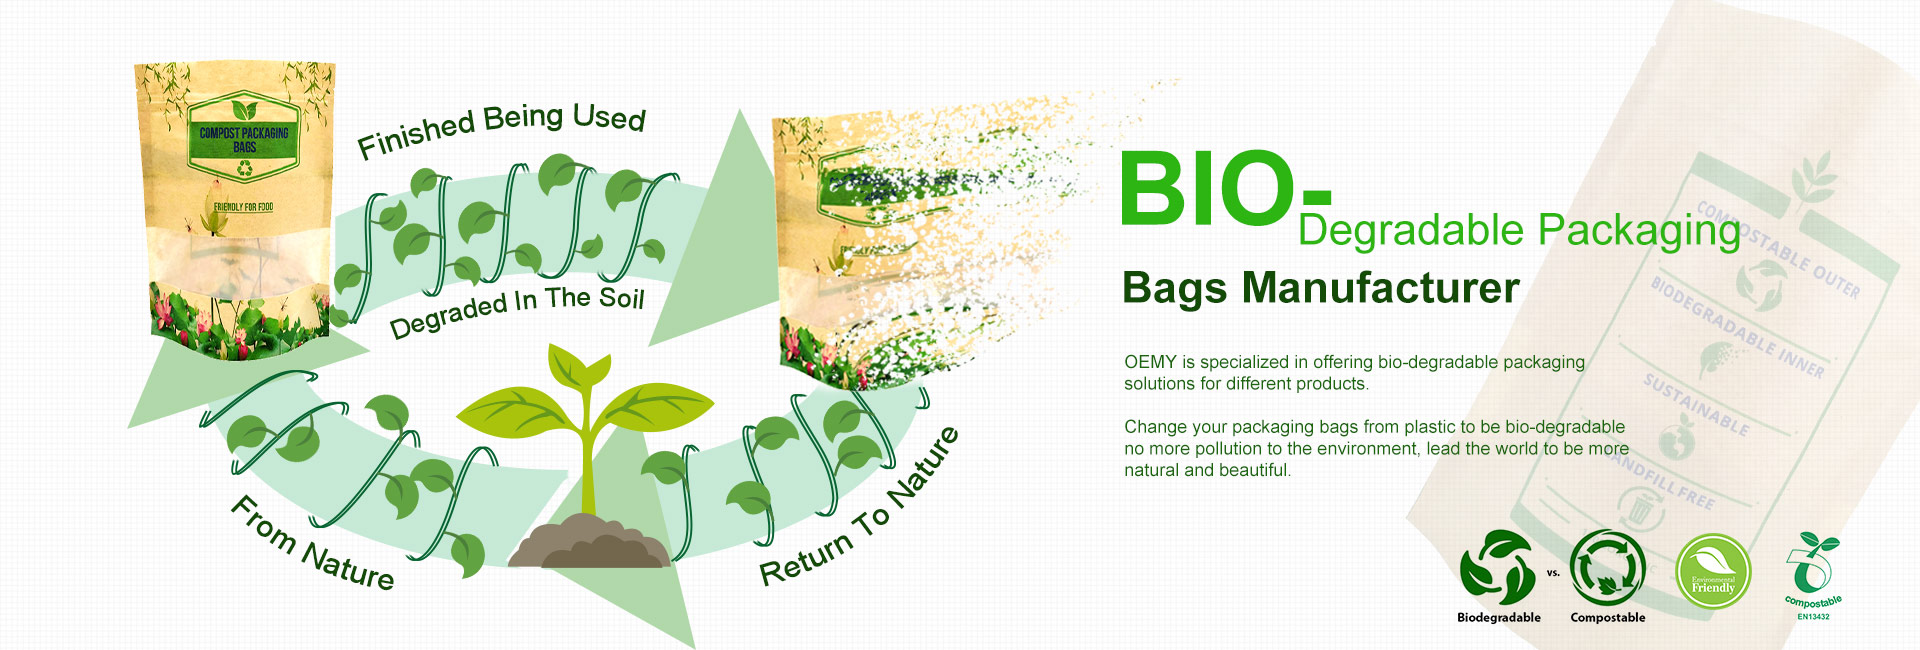 Embalagem biodegradável